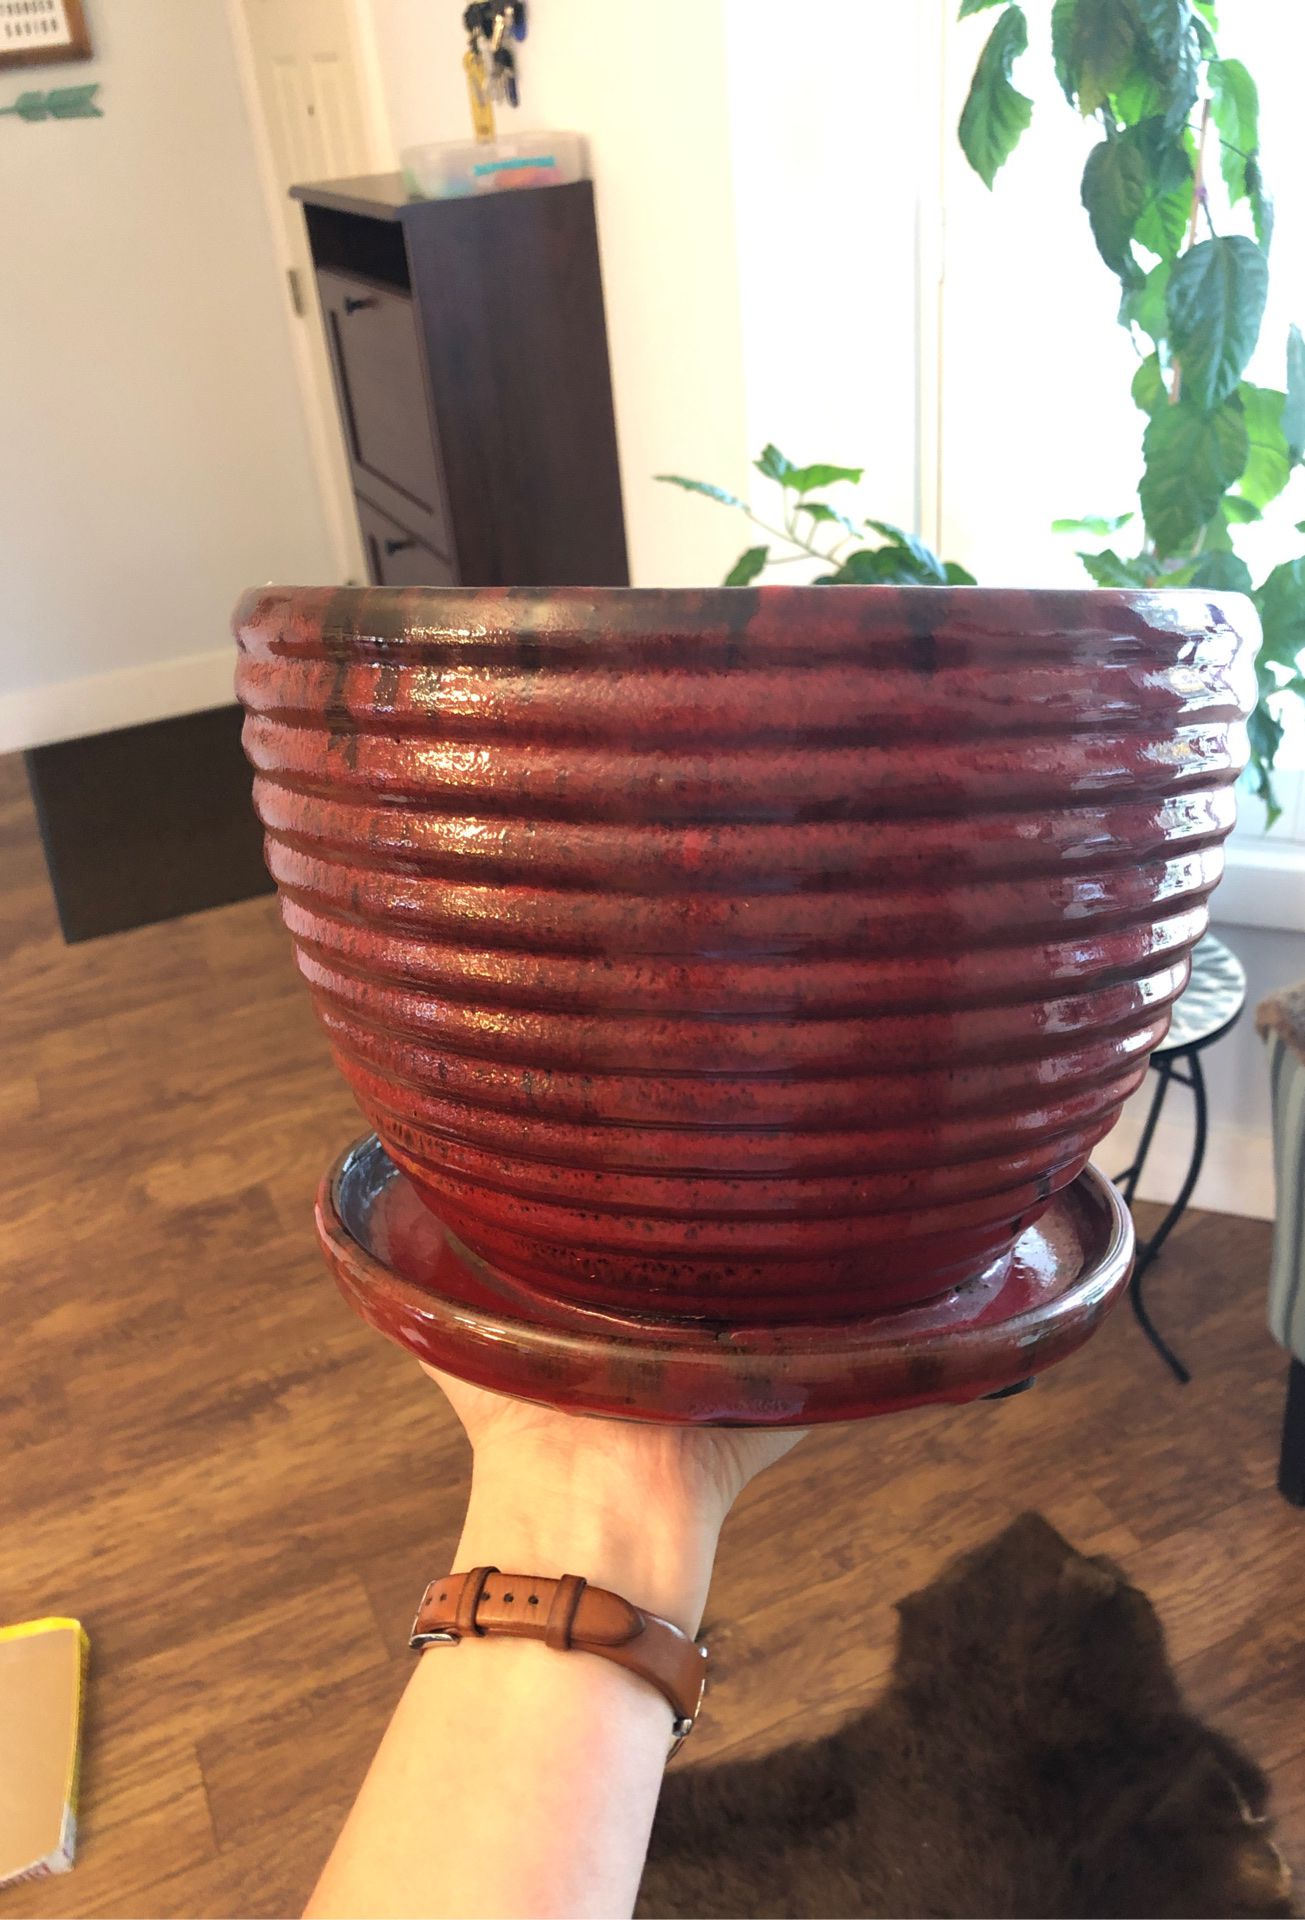 9.5” ceramic planter